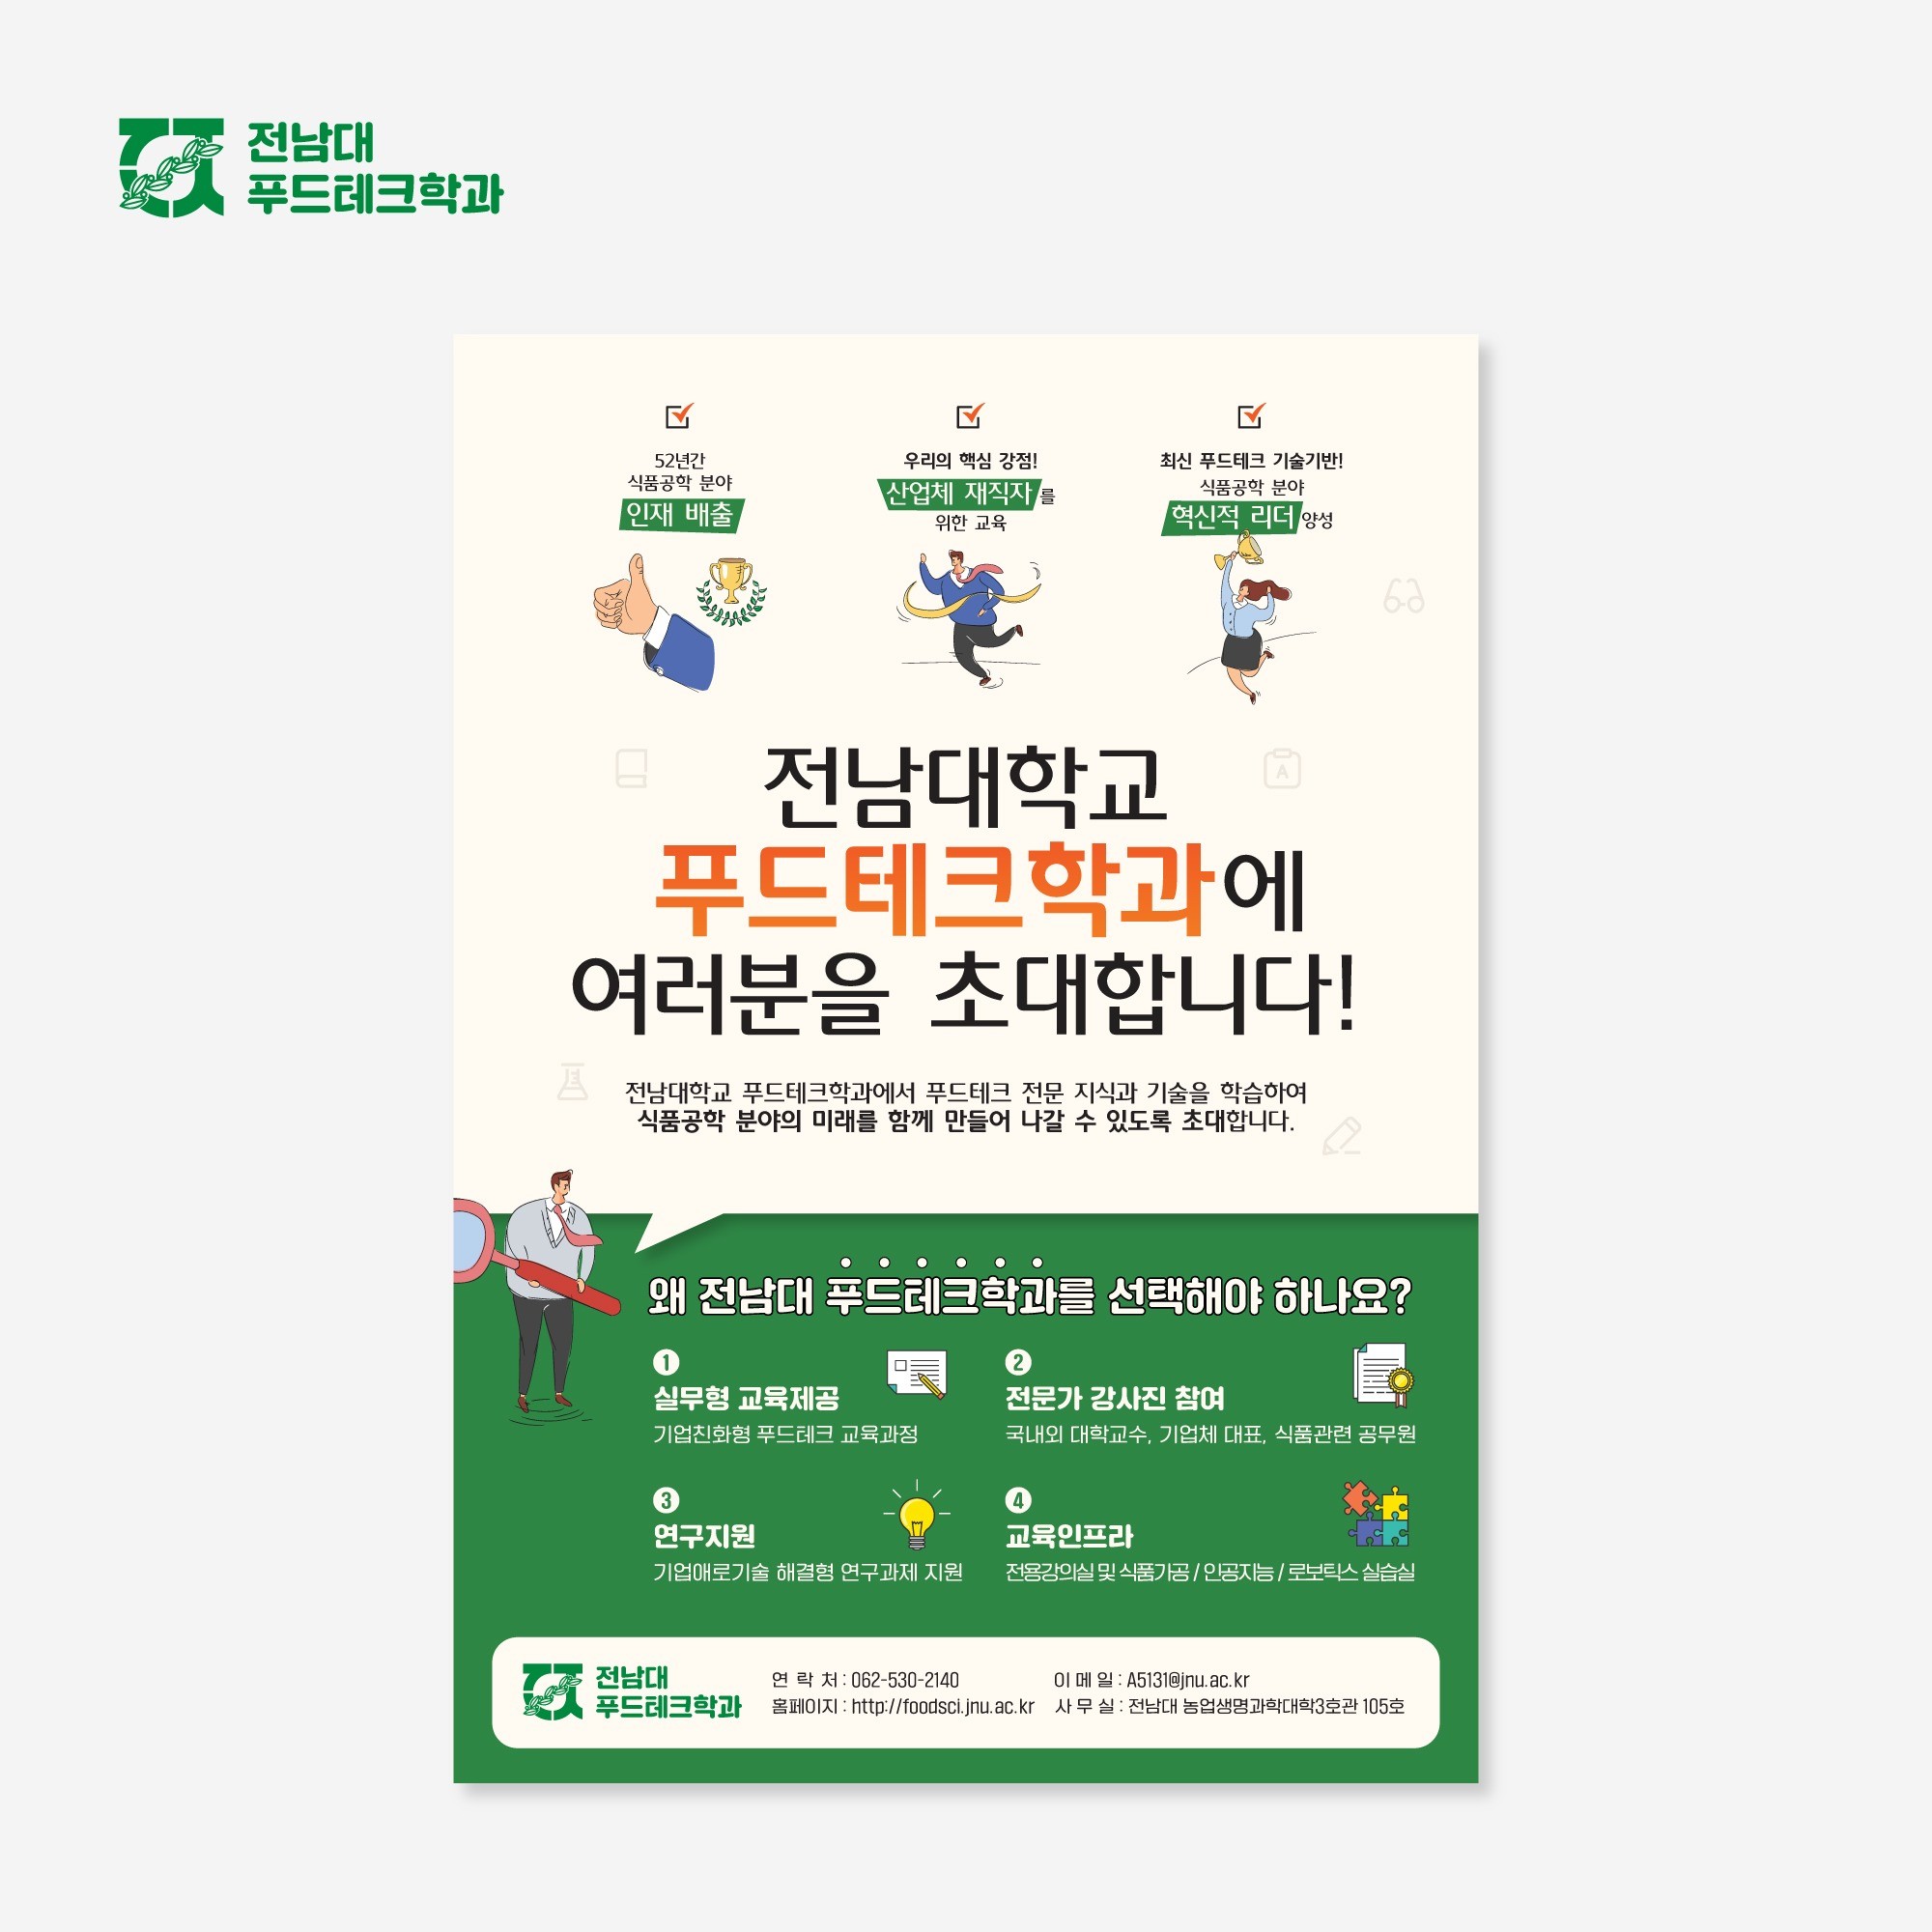 포트폴리오-전남대학교 푸드테크학과 모집안내 홍보 포스터 디자인 제작